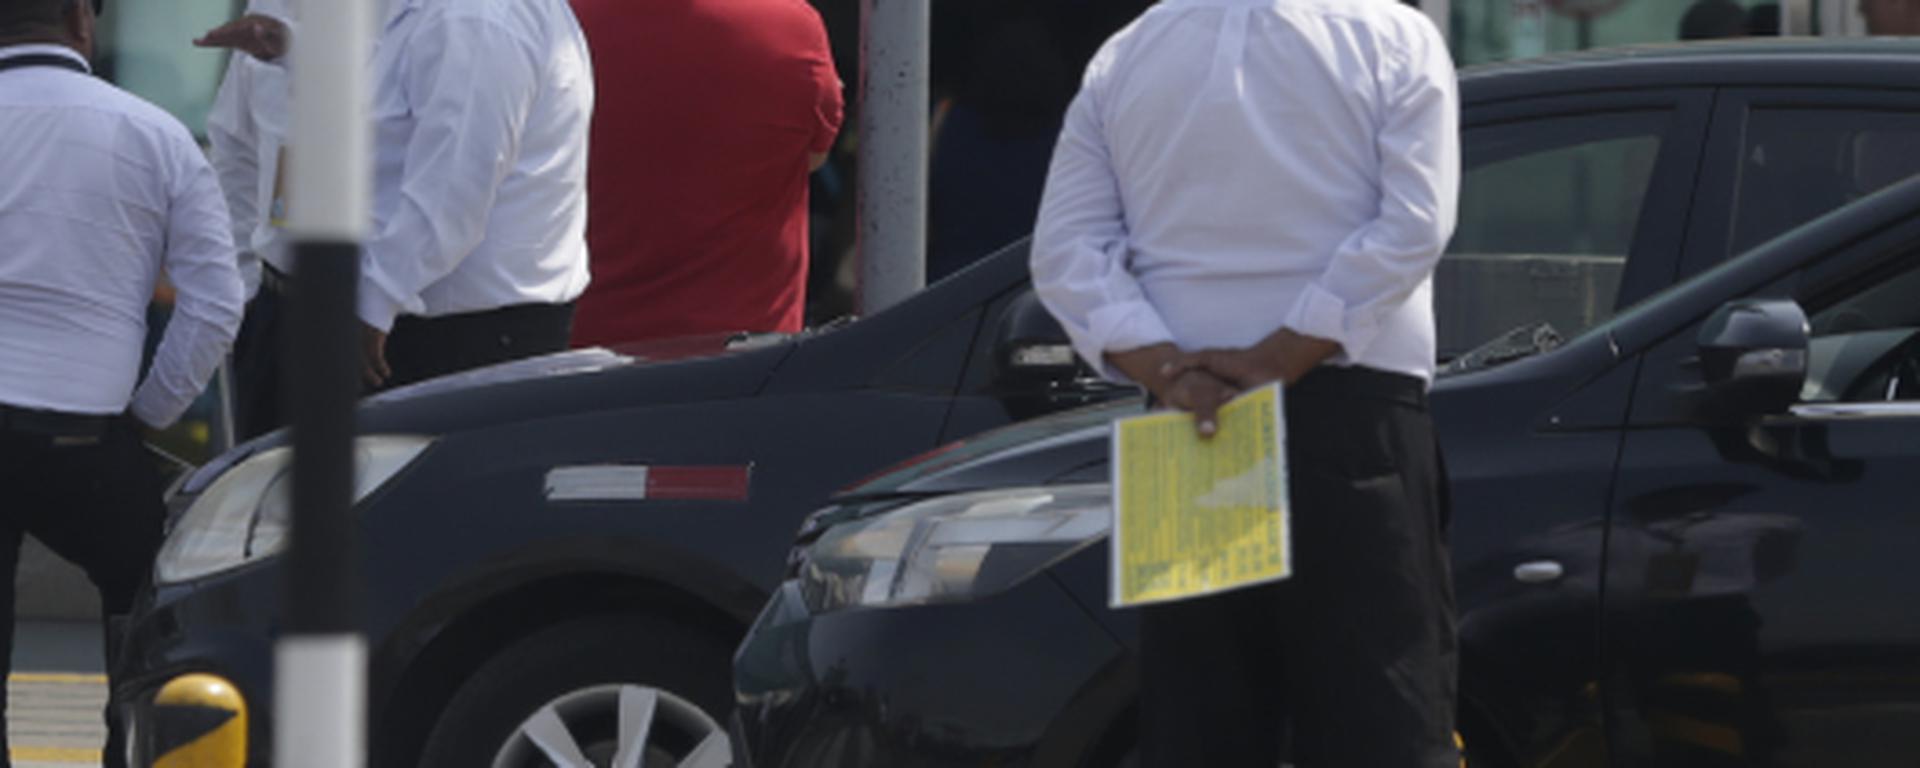 Personal del Jorge Chávez amenazado por red de taxistas que ocupan el estacionamiento: Así fueron las 3 agresiones 